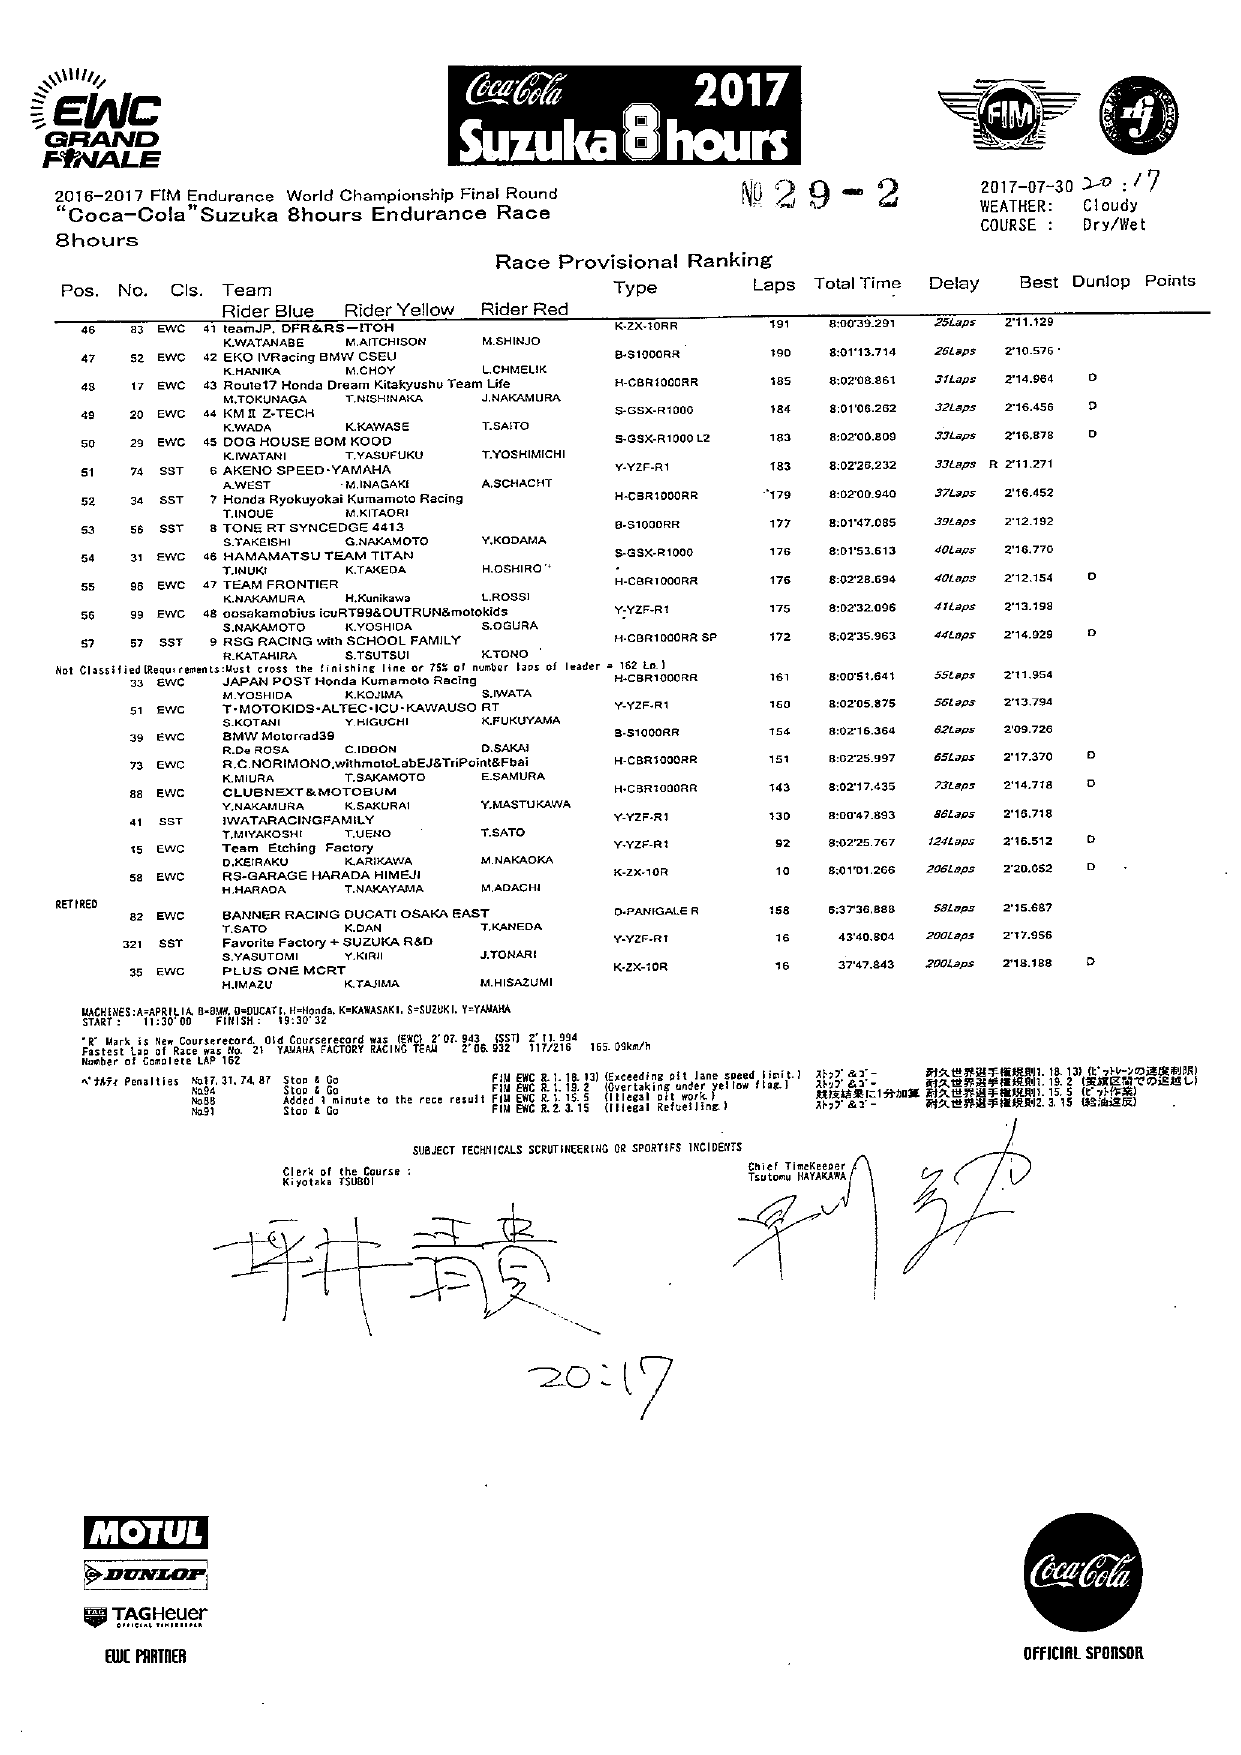 Предварительные результаты Suzuka 8 Hours 2017 года